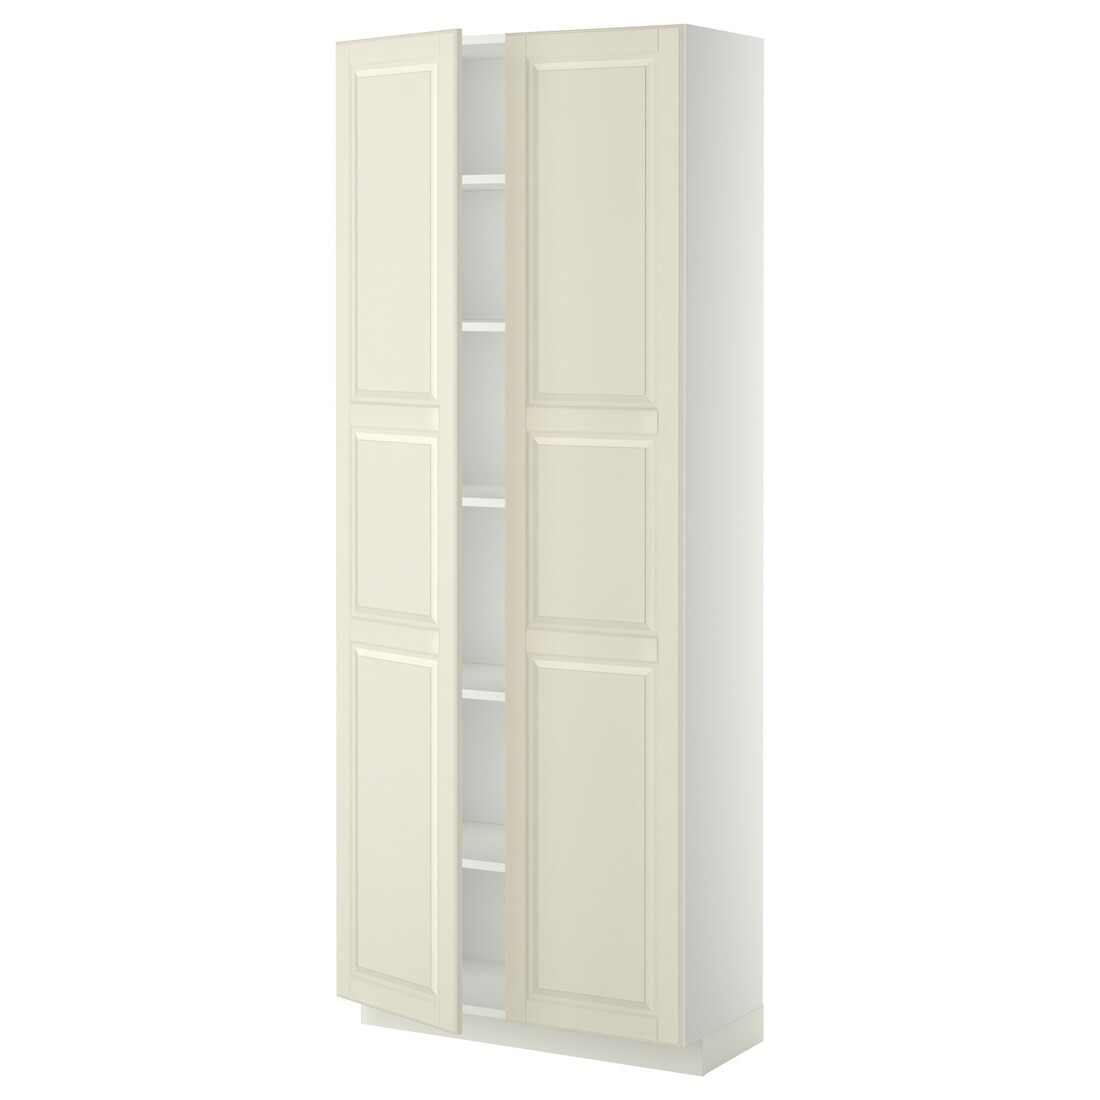 IKEA METOD МЕТОД Высокий шкаф с полками, белый / Bodbyn кремовый, 80x37x200 см 19469380 | 194.693.80